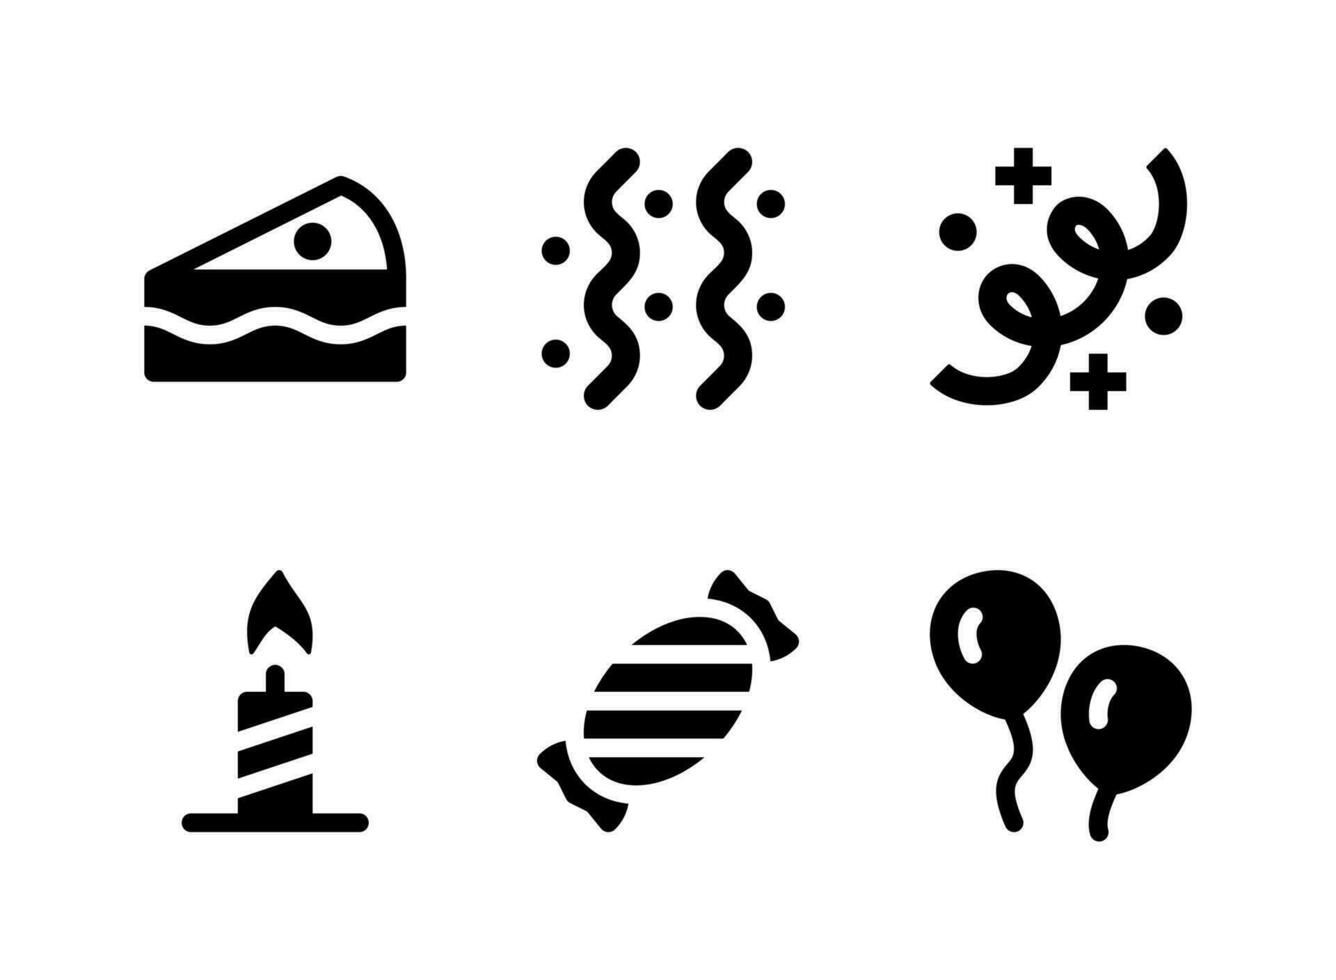 semplice set di icone solide vettoriali relative al compleanno. contiene icone come stelle filanti, candele, caramelle, palloncini e altro ancora.